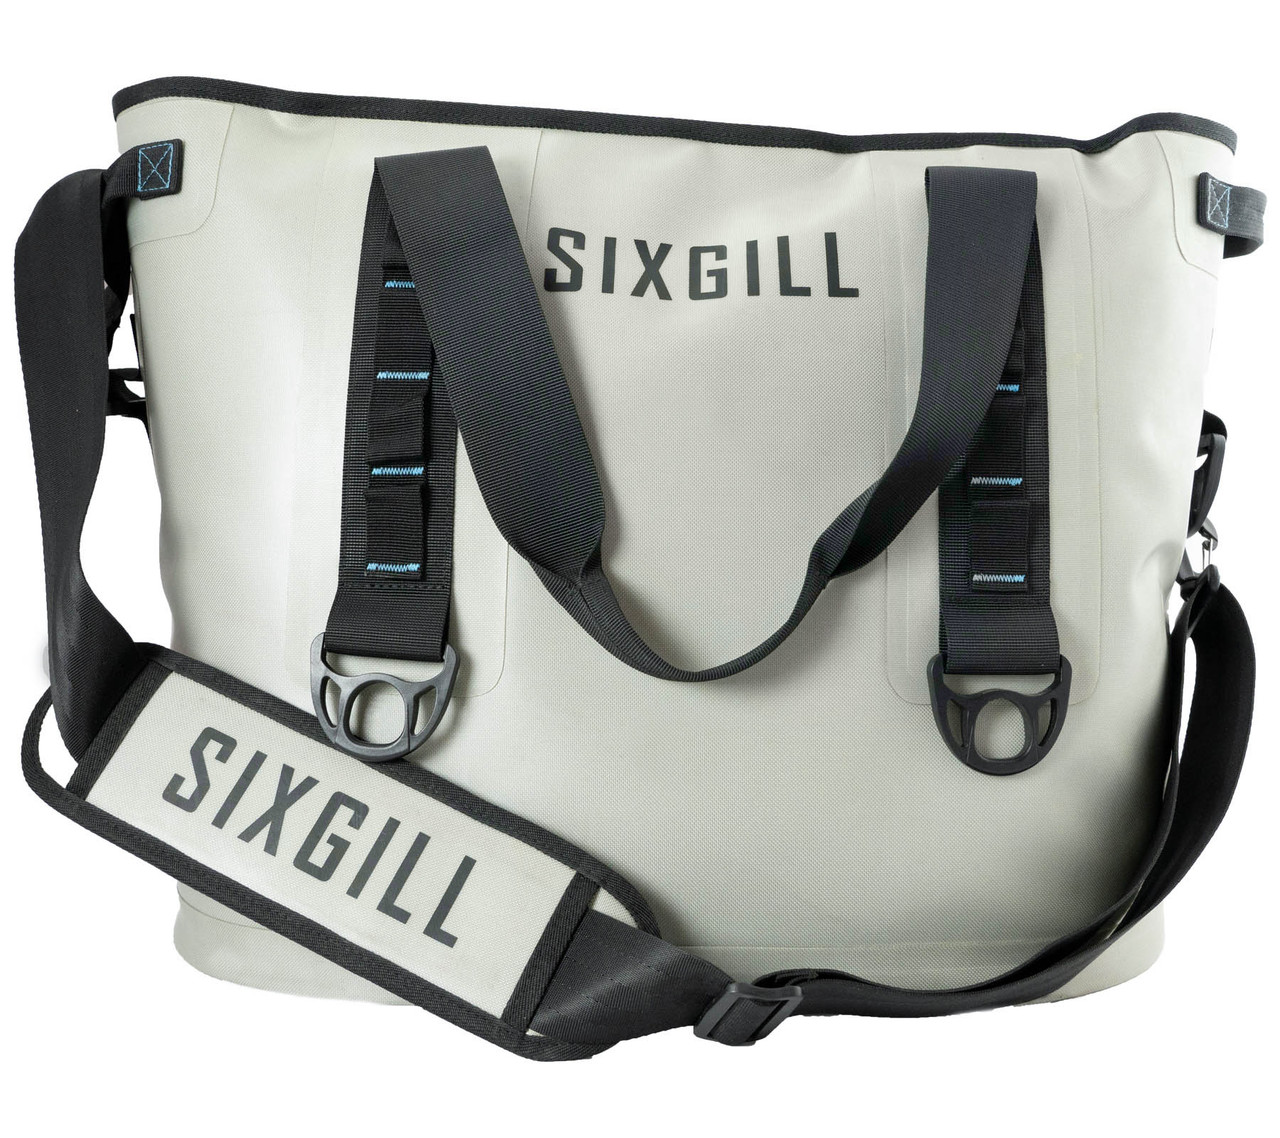 Sixgill Soft Cooler Bag - 30L